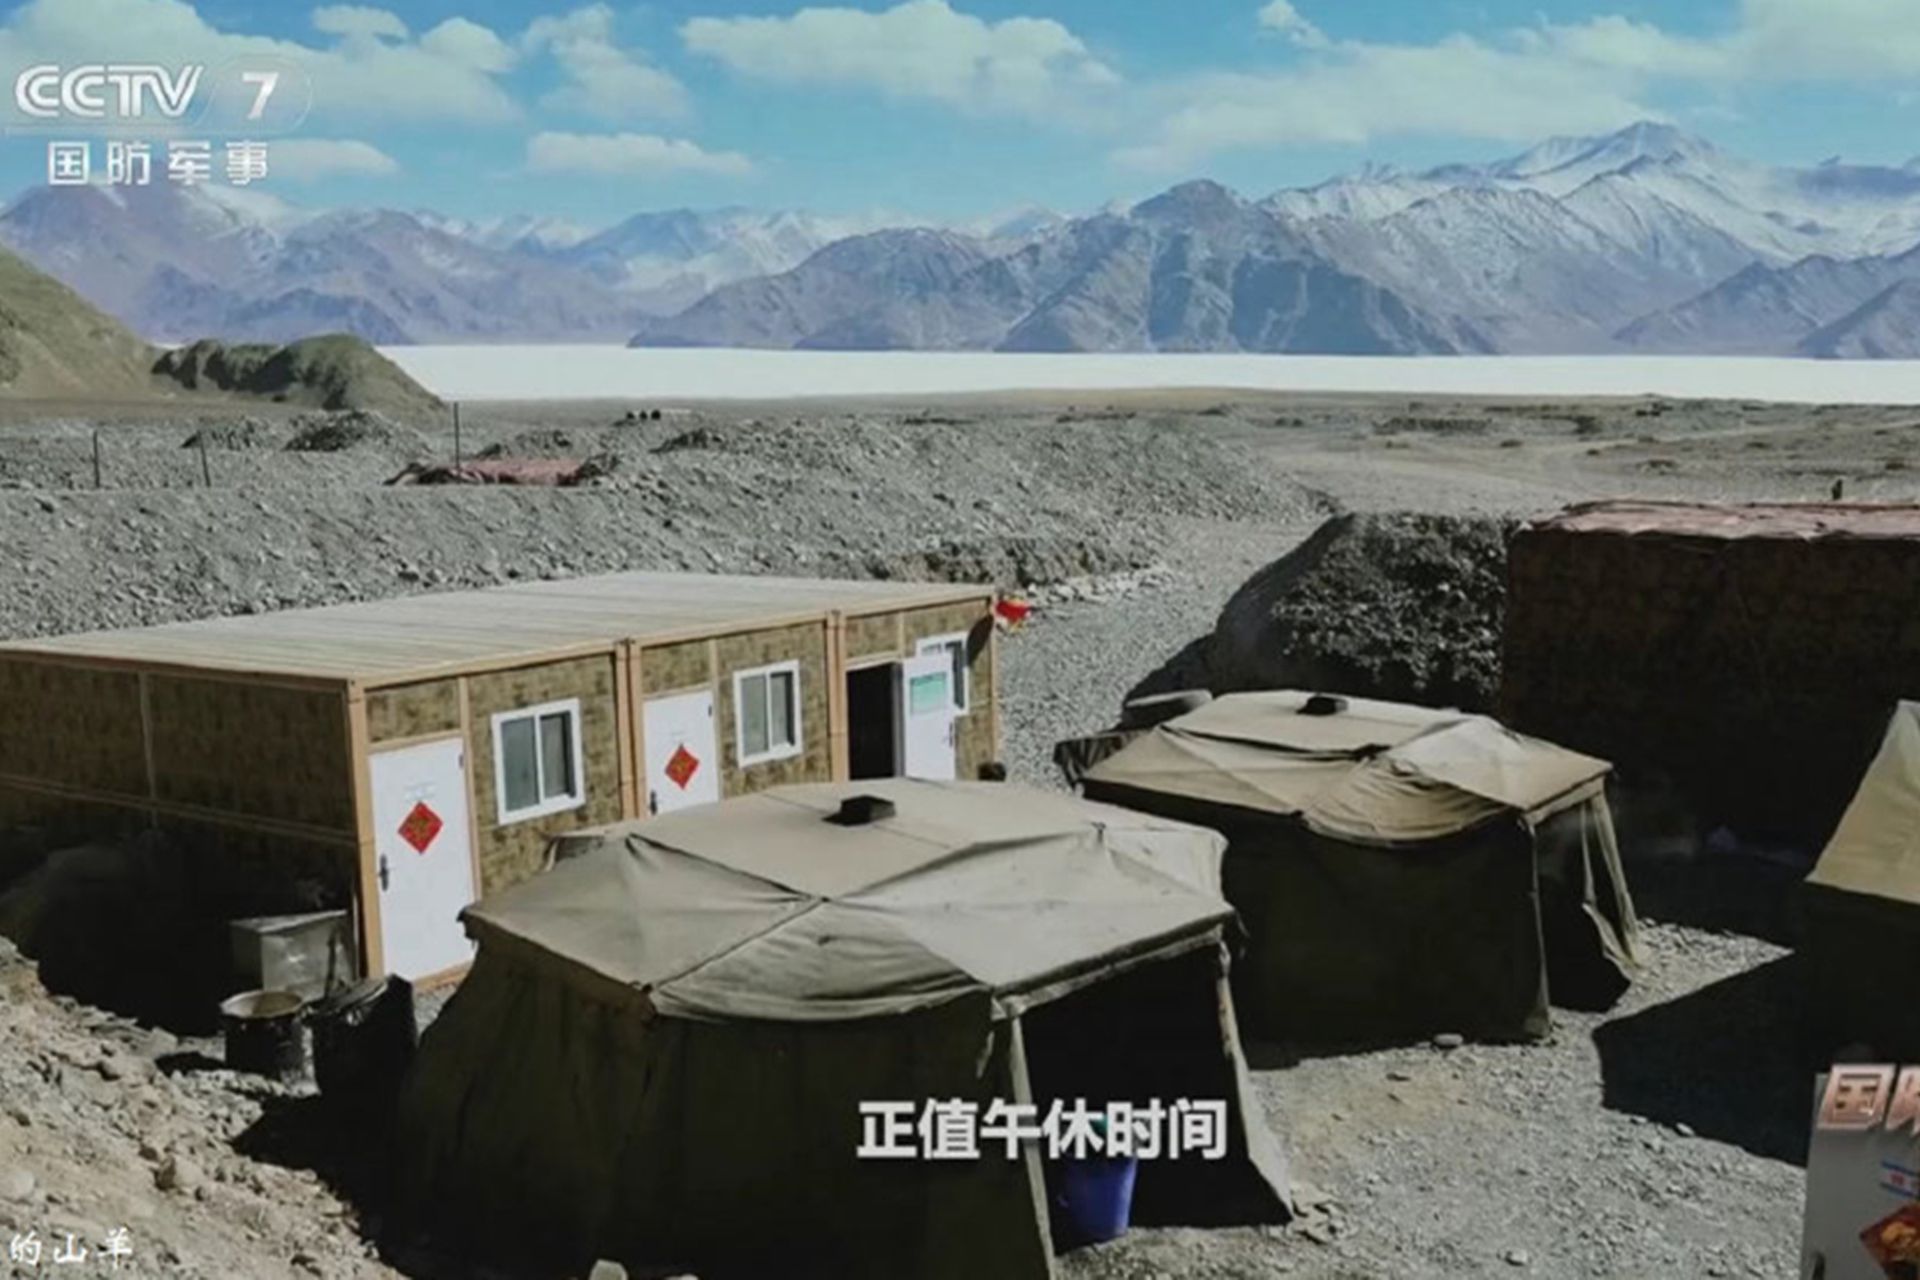 2021年春节期间，解放军新疆军区在边防一线进行备战。图为解放军修建的简易营房。（中国央视截图）